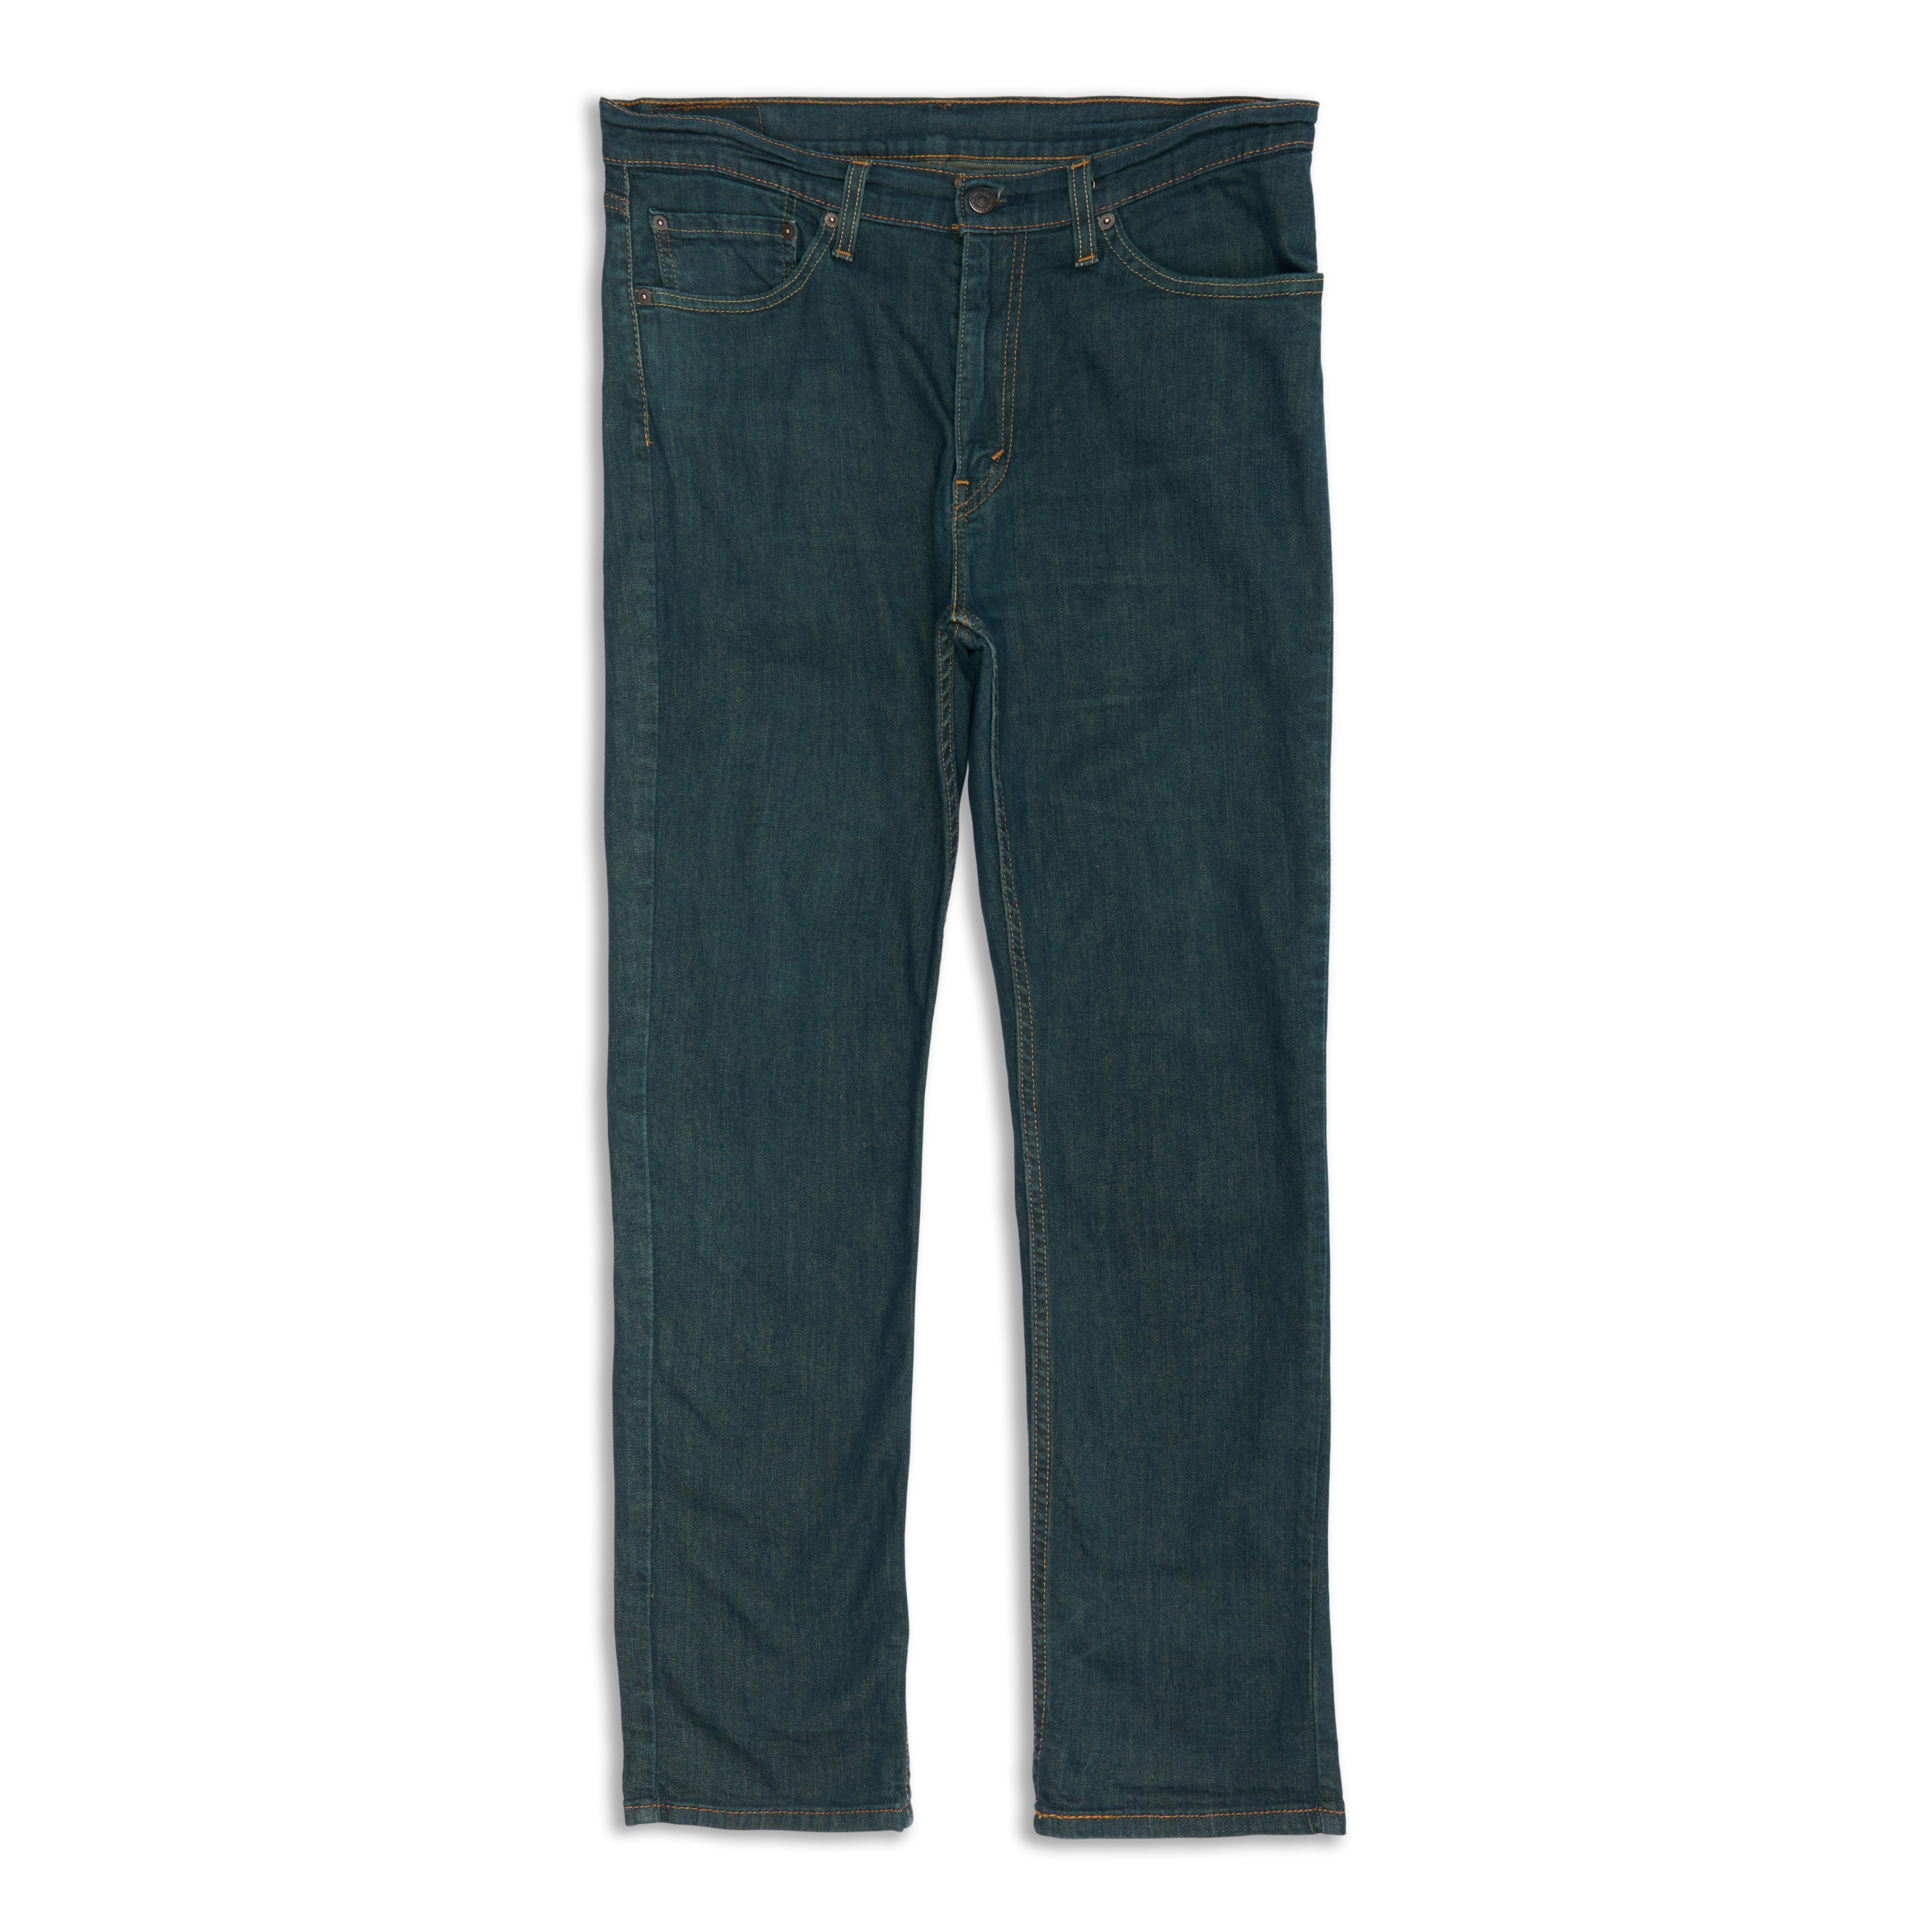 Levis 511™ Slim Fit Men's Jeans Rinsed Playa